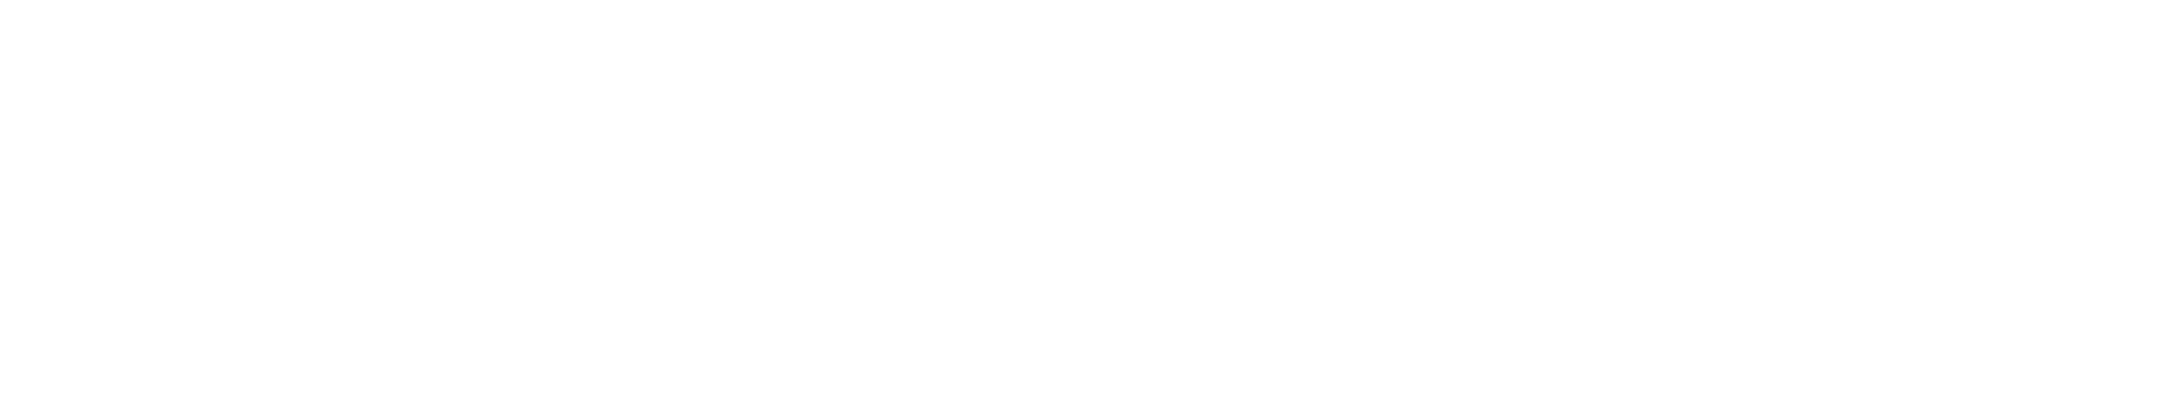 Illinois State Ambulance Association